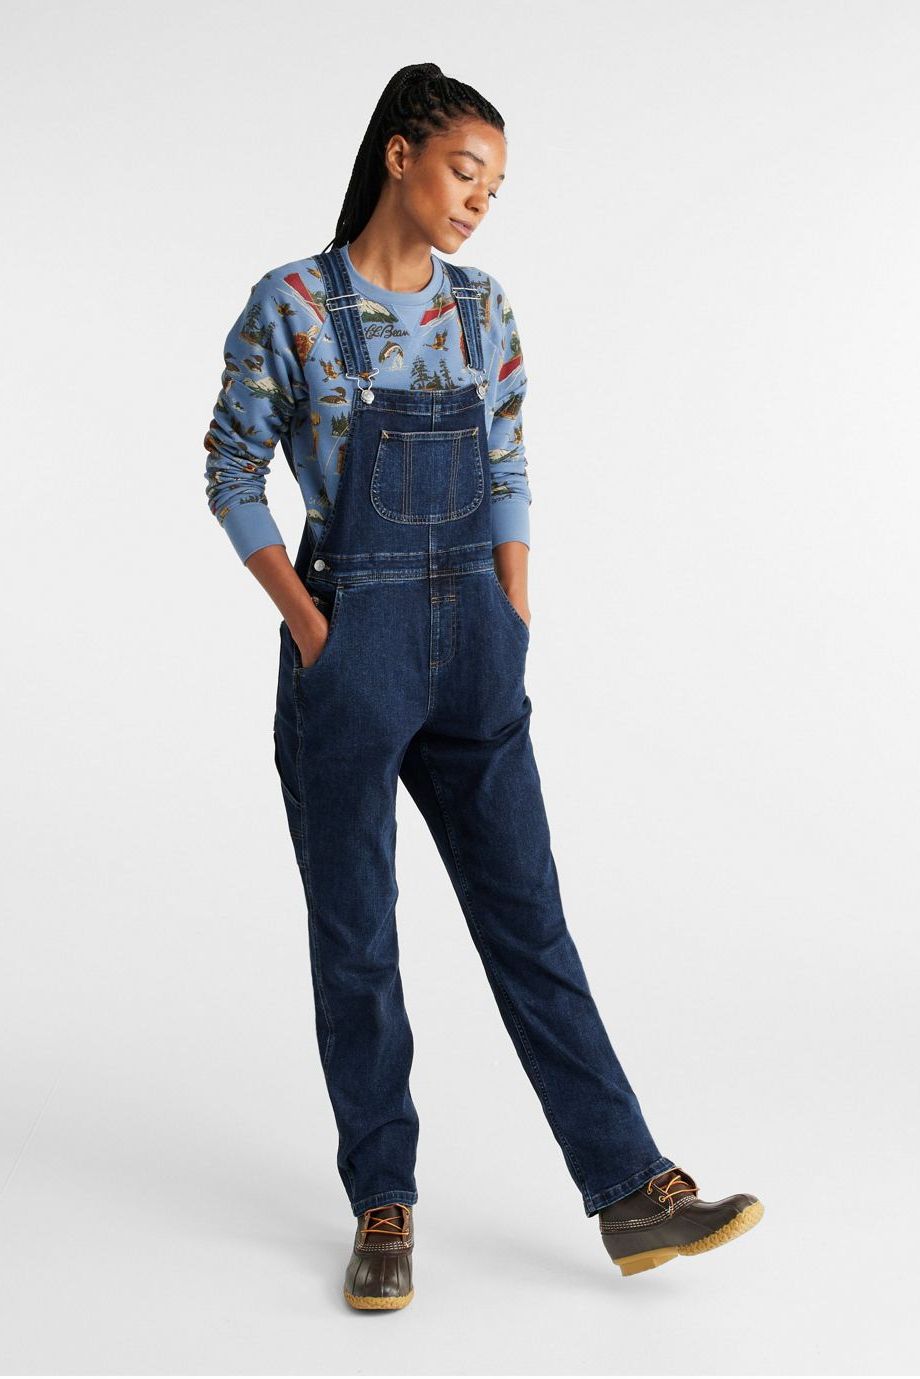 L.L.Bean Women's 207 Vintage Jeans Overalls